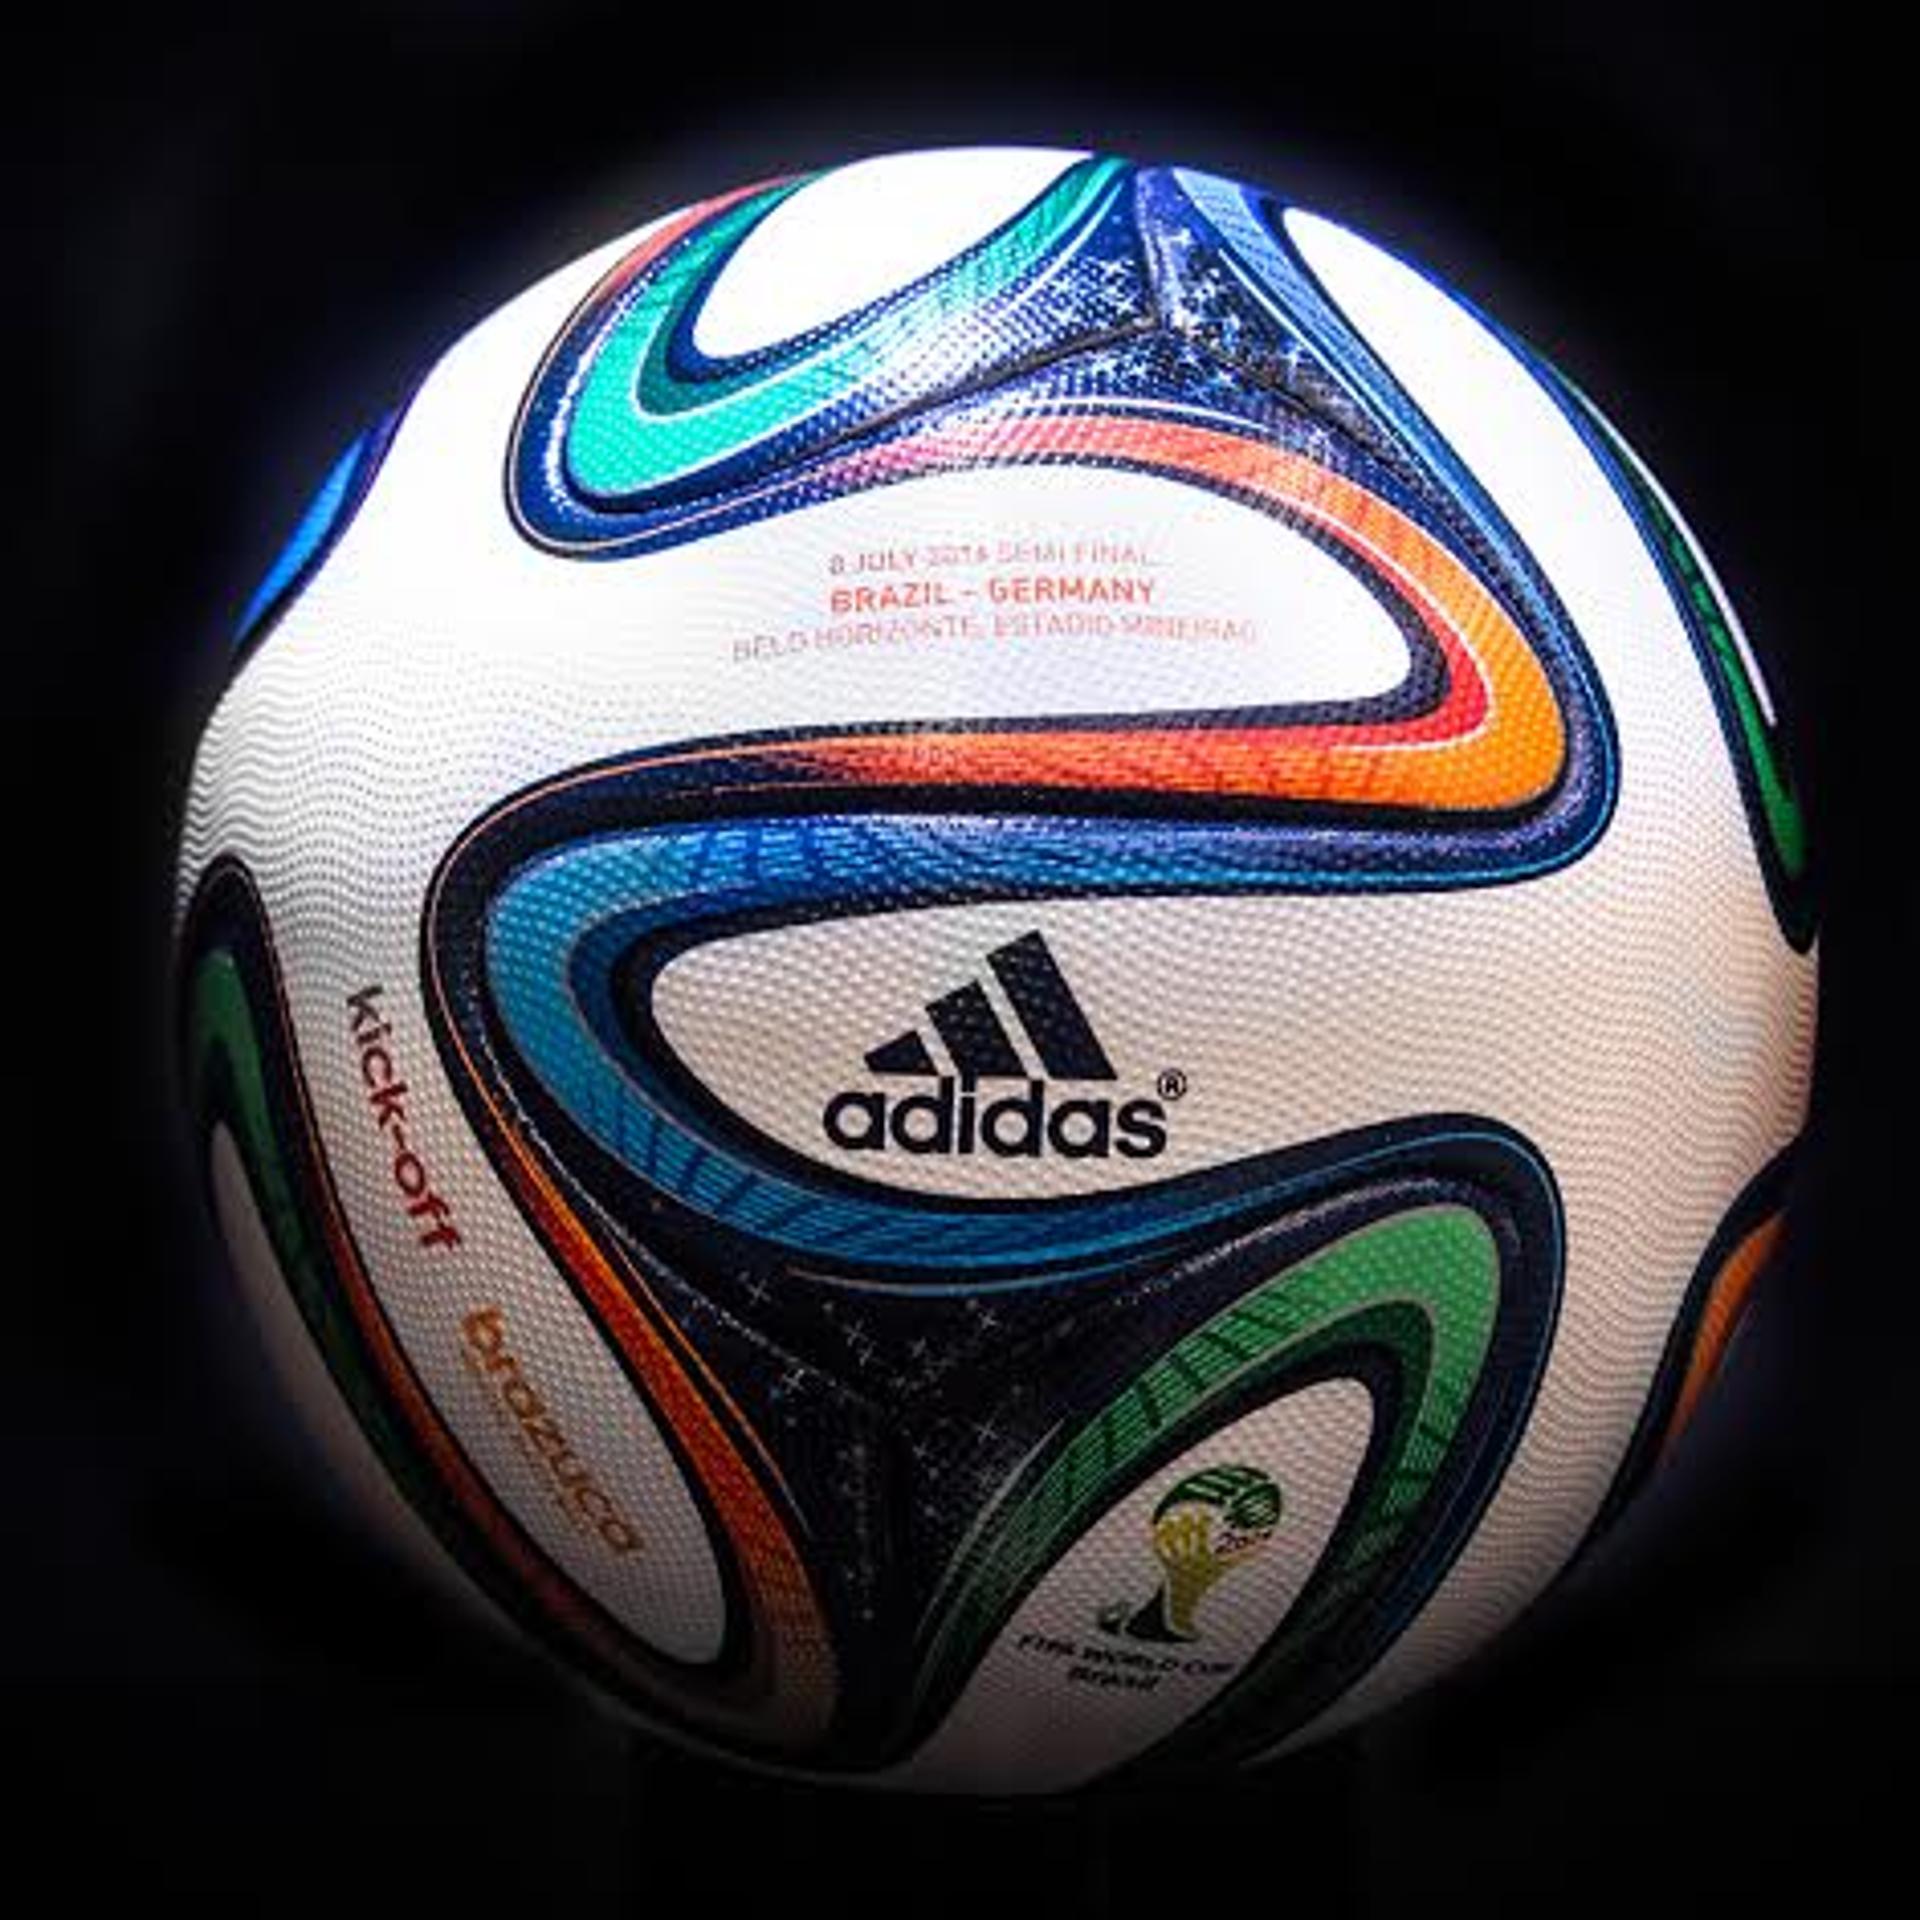 A Brazuca, bola que será usada na semifinal entre Brasil e Alemanha, no Mineirão